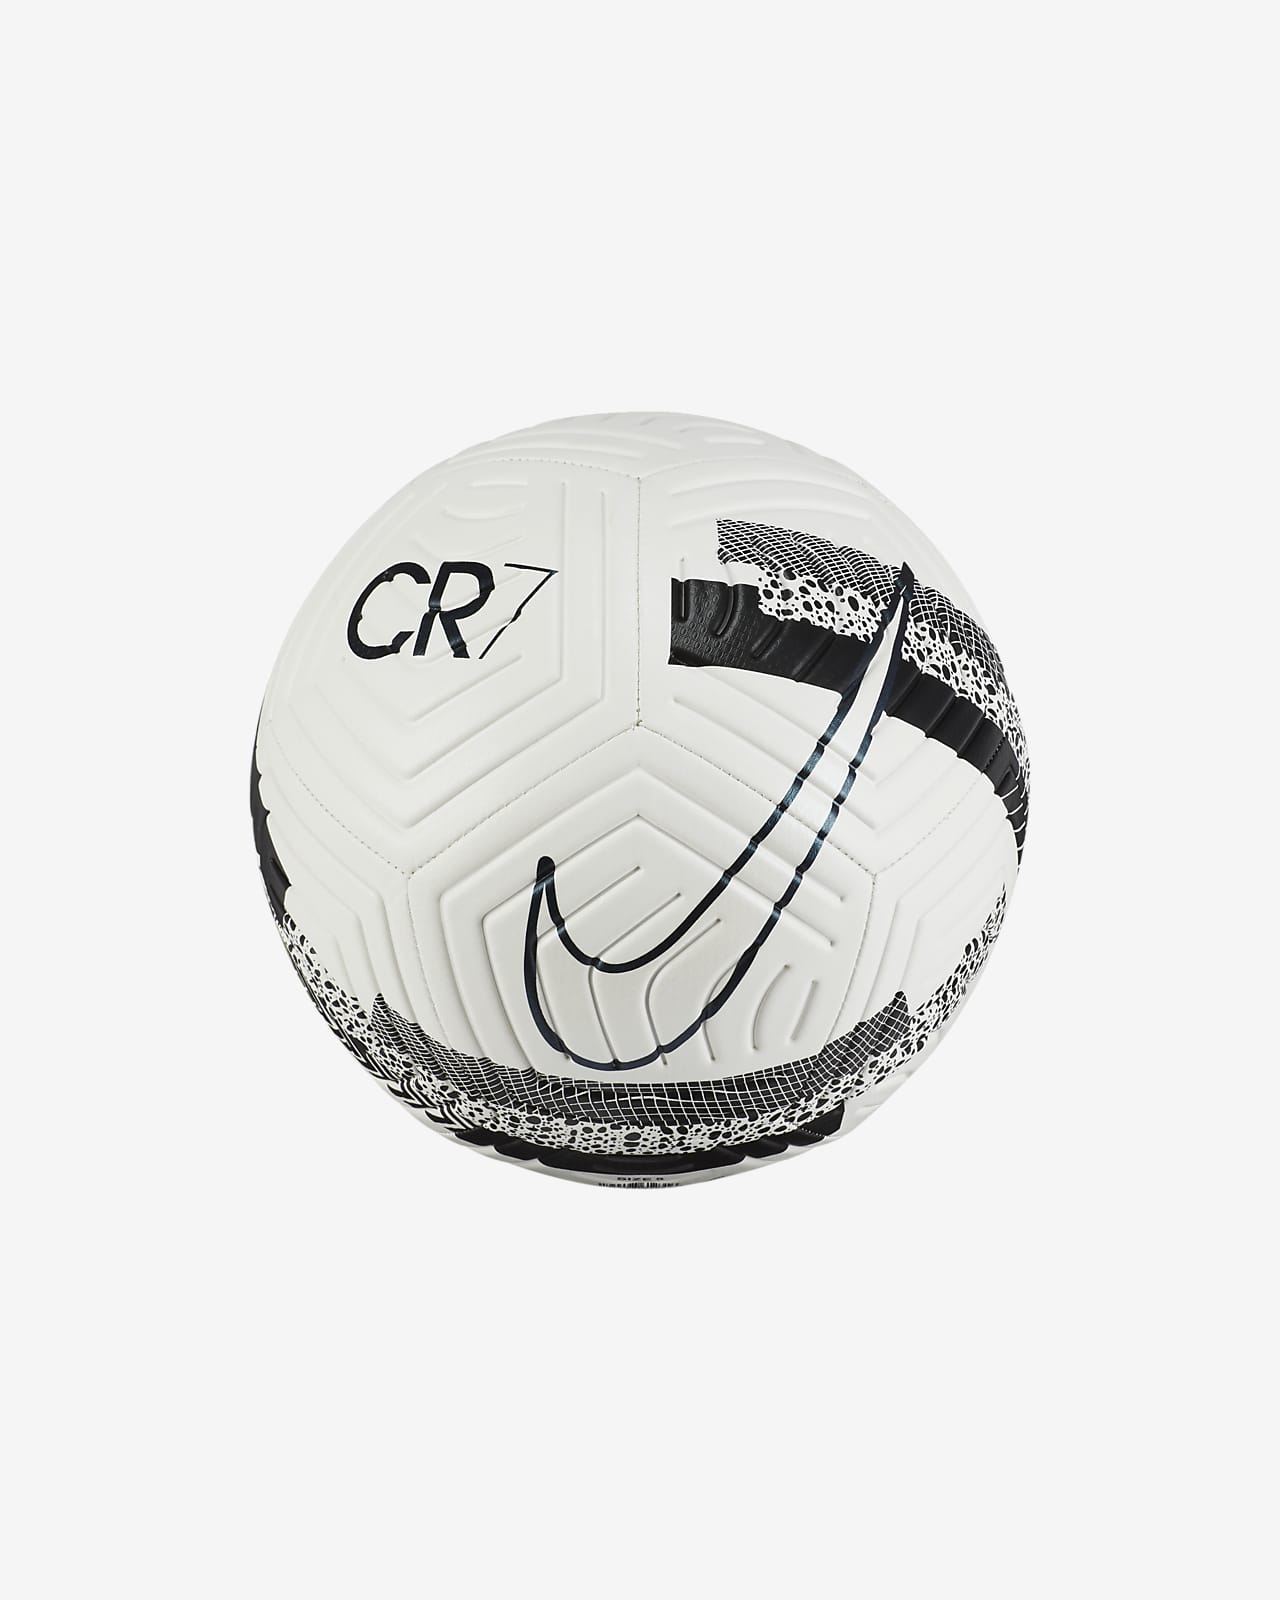 cr7 ball